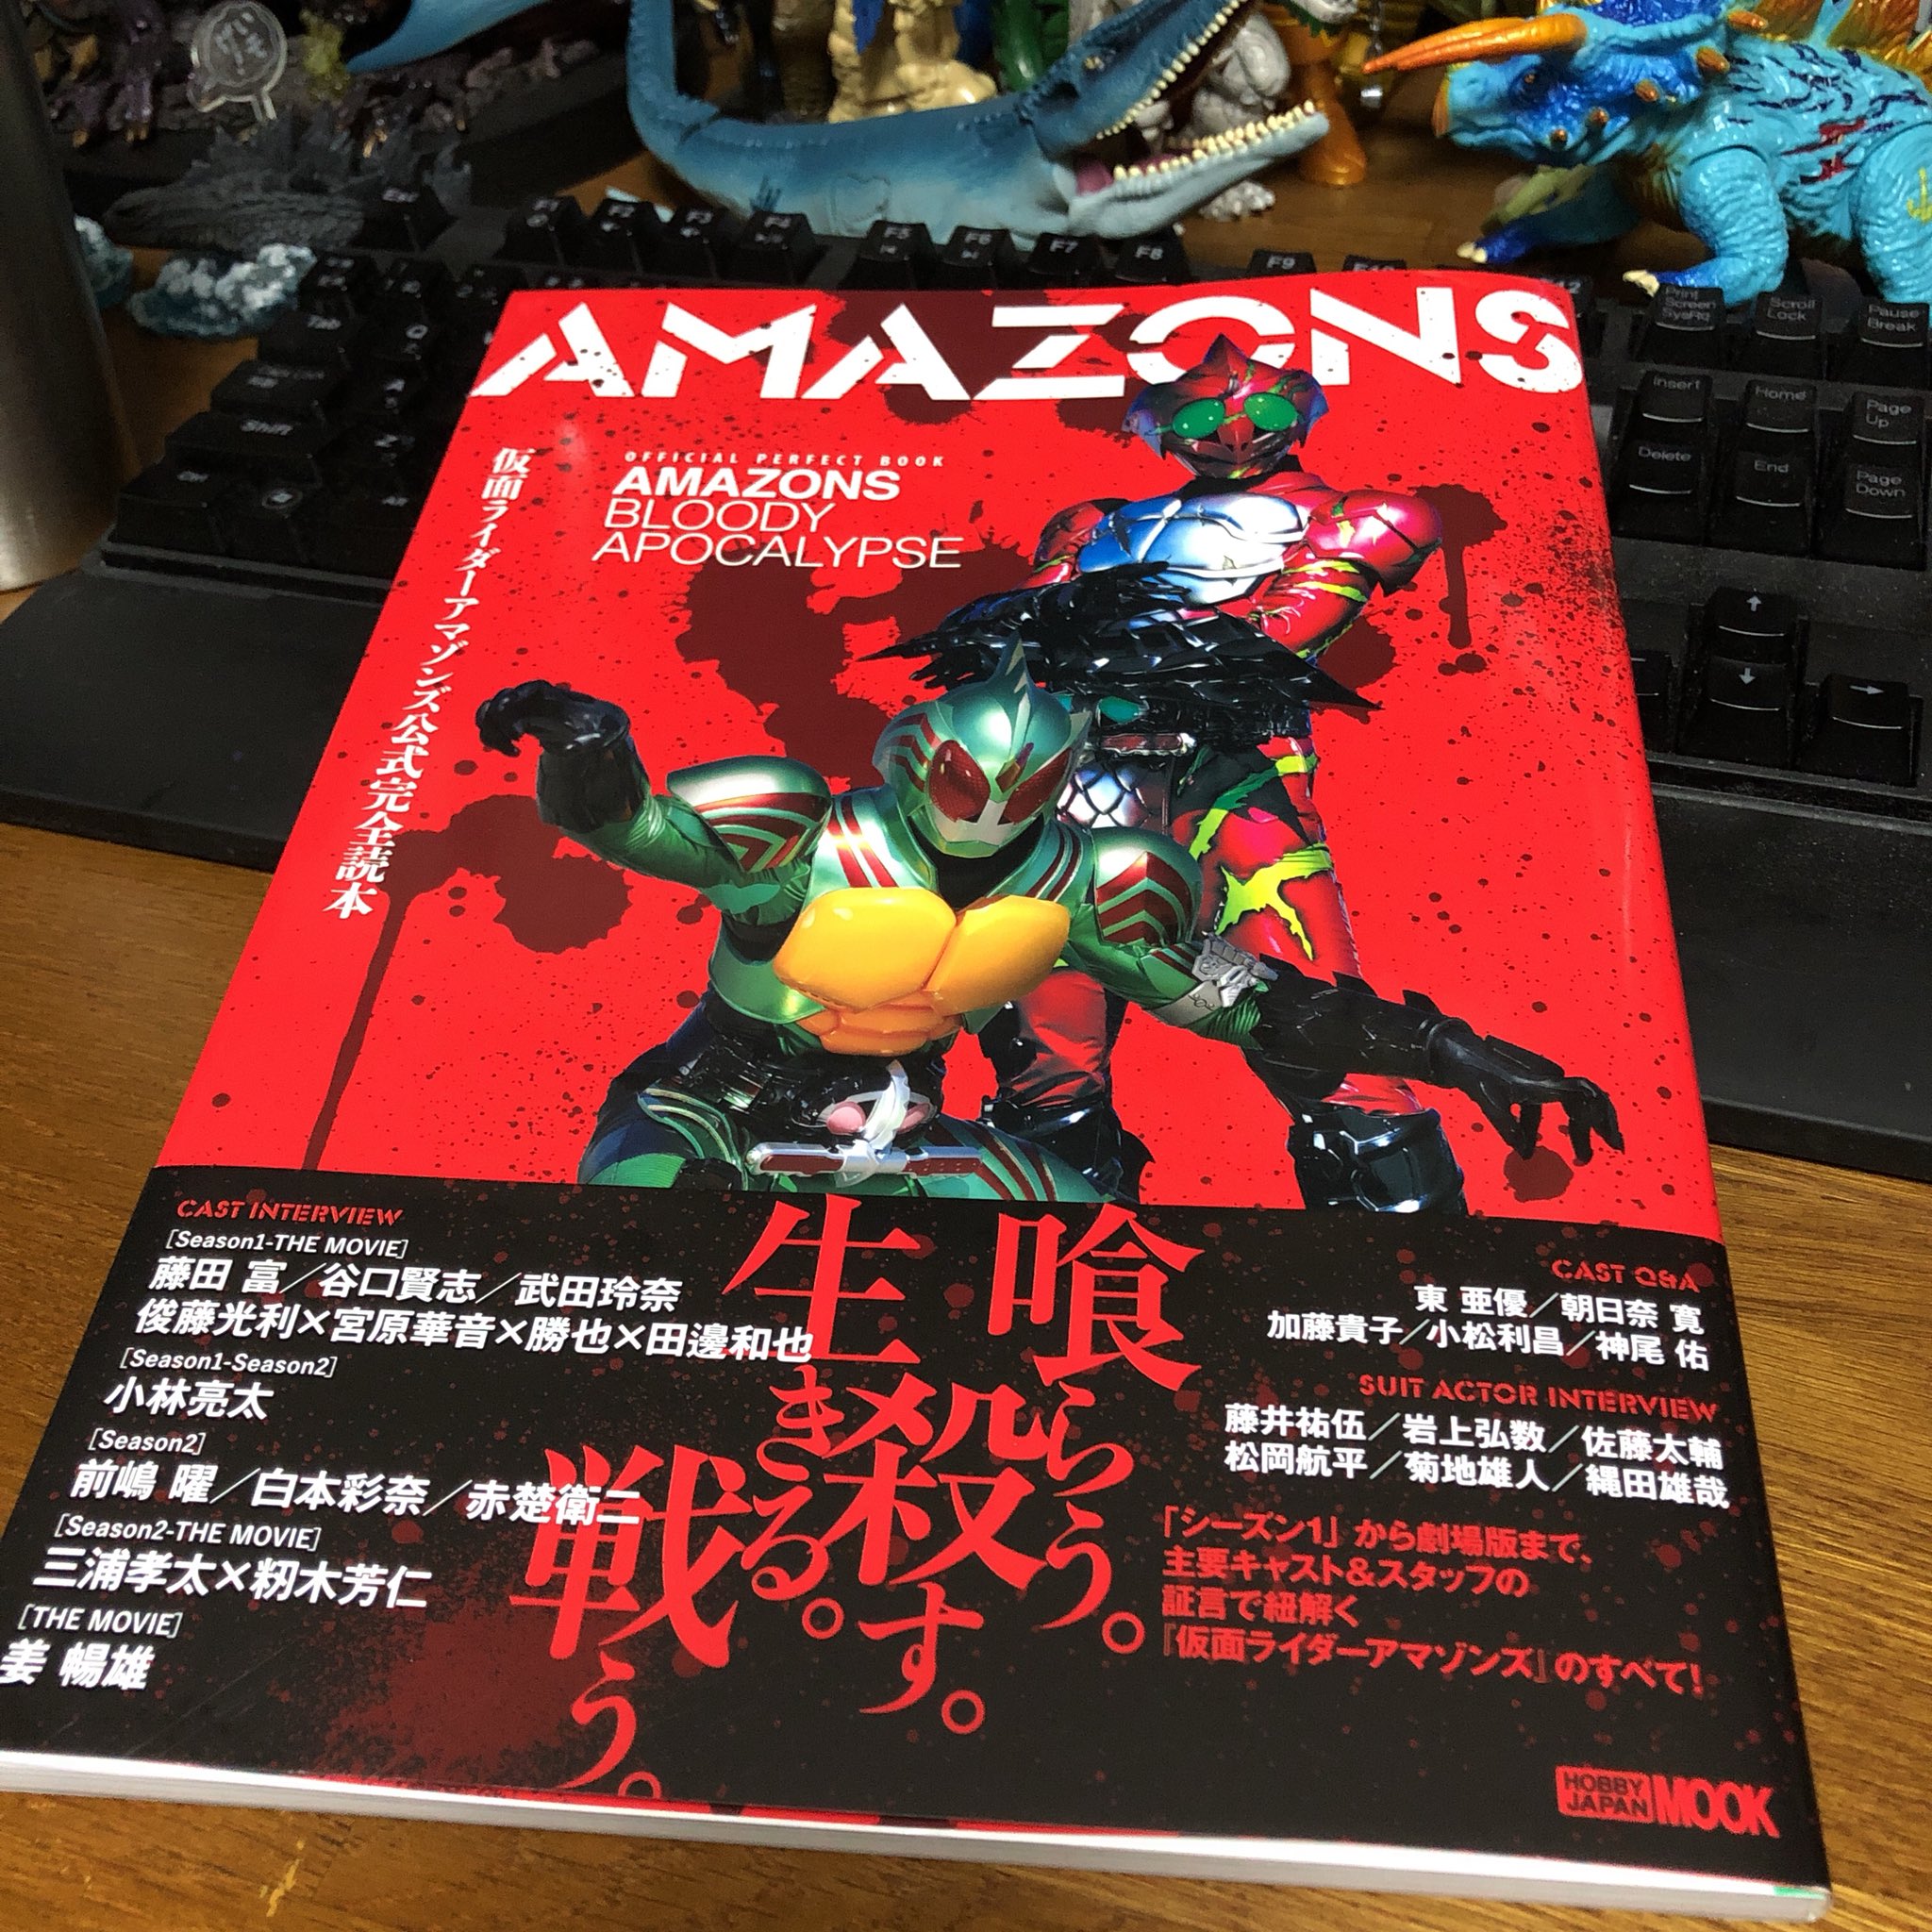 ガイガン山崎 on Twitter: "『仮面ライダーアマゾンズ完全公式読本』、もう売ってるところには売ってるらしいけど、月曜日発売です。僕は